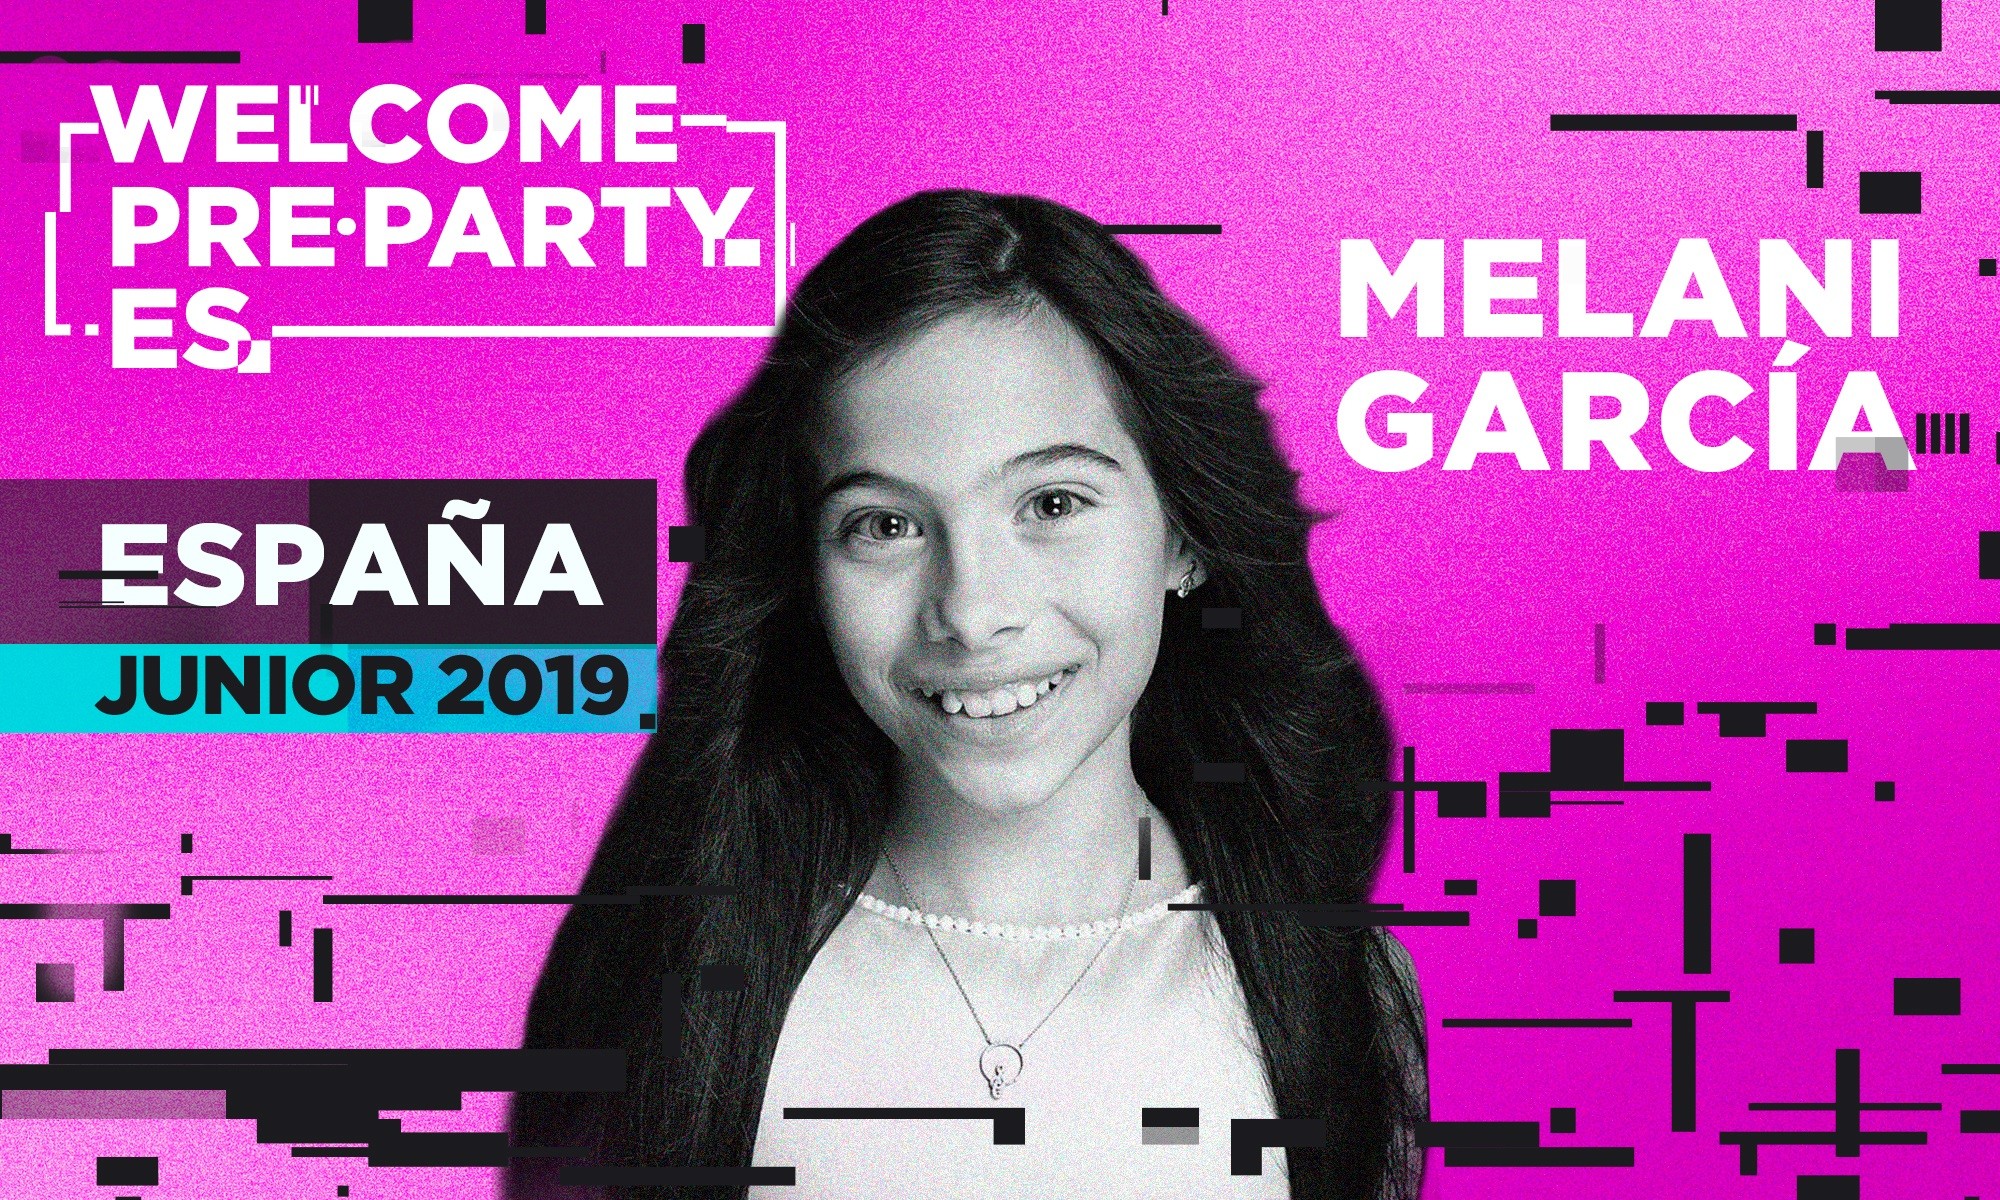 ¡Melani es la primera artista confirmada en la Welcome PrePartyES 2020!